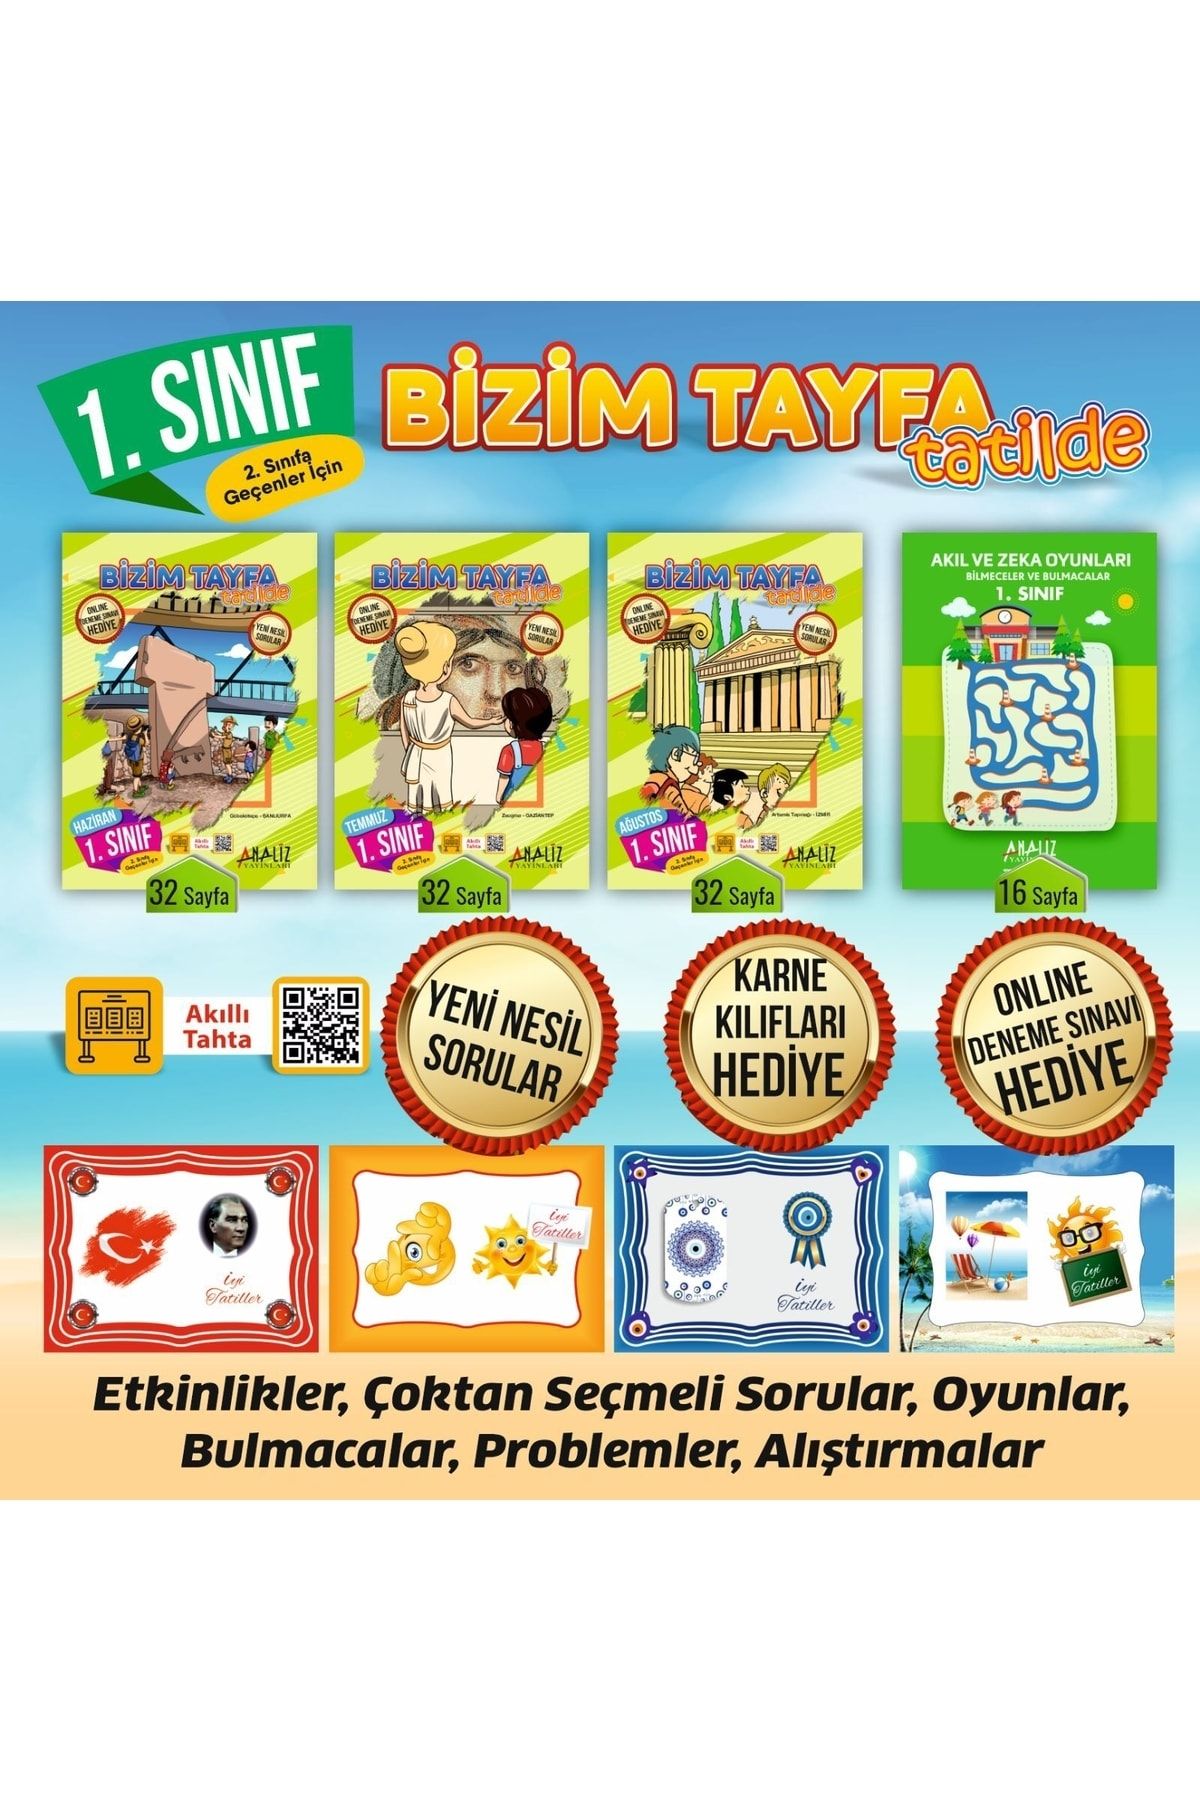 Analiz Yayınları 1.sınıf Bizim Tayfa Tatilde Etkinlik Ve Tatil Kitabı Karne Kılııfı Hediye